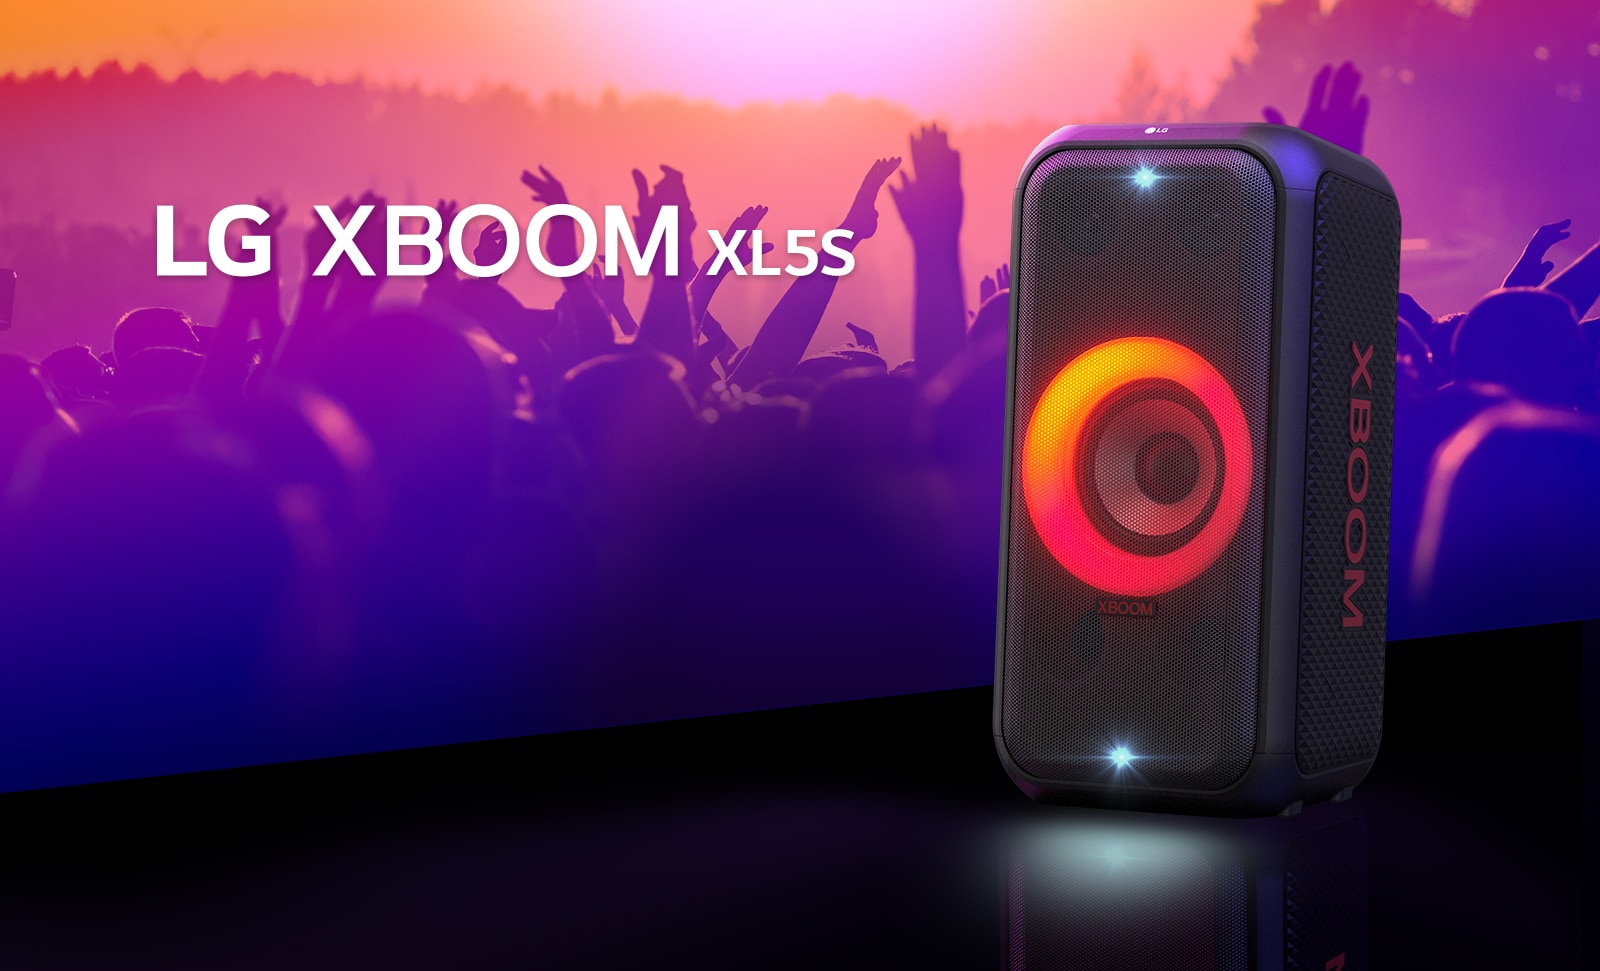 Reproduktor LG XBOOM XL5S je postaven na pódiu se zapnutým červeno-oranžovým gradientním osvětlením. Za pódiem si lidé užívají hudbu.